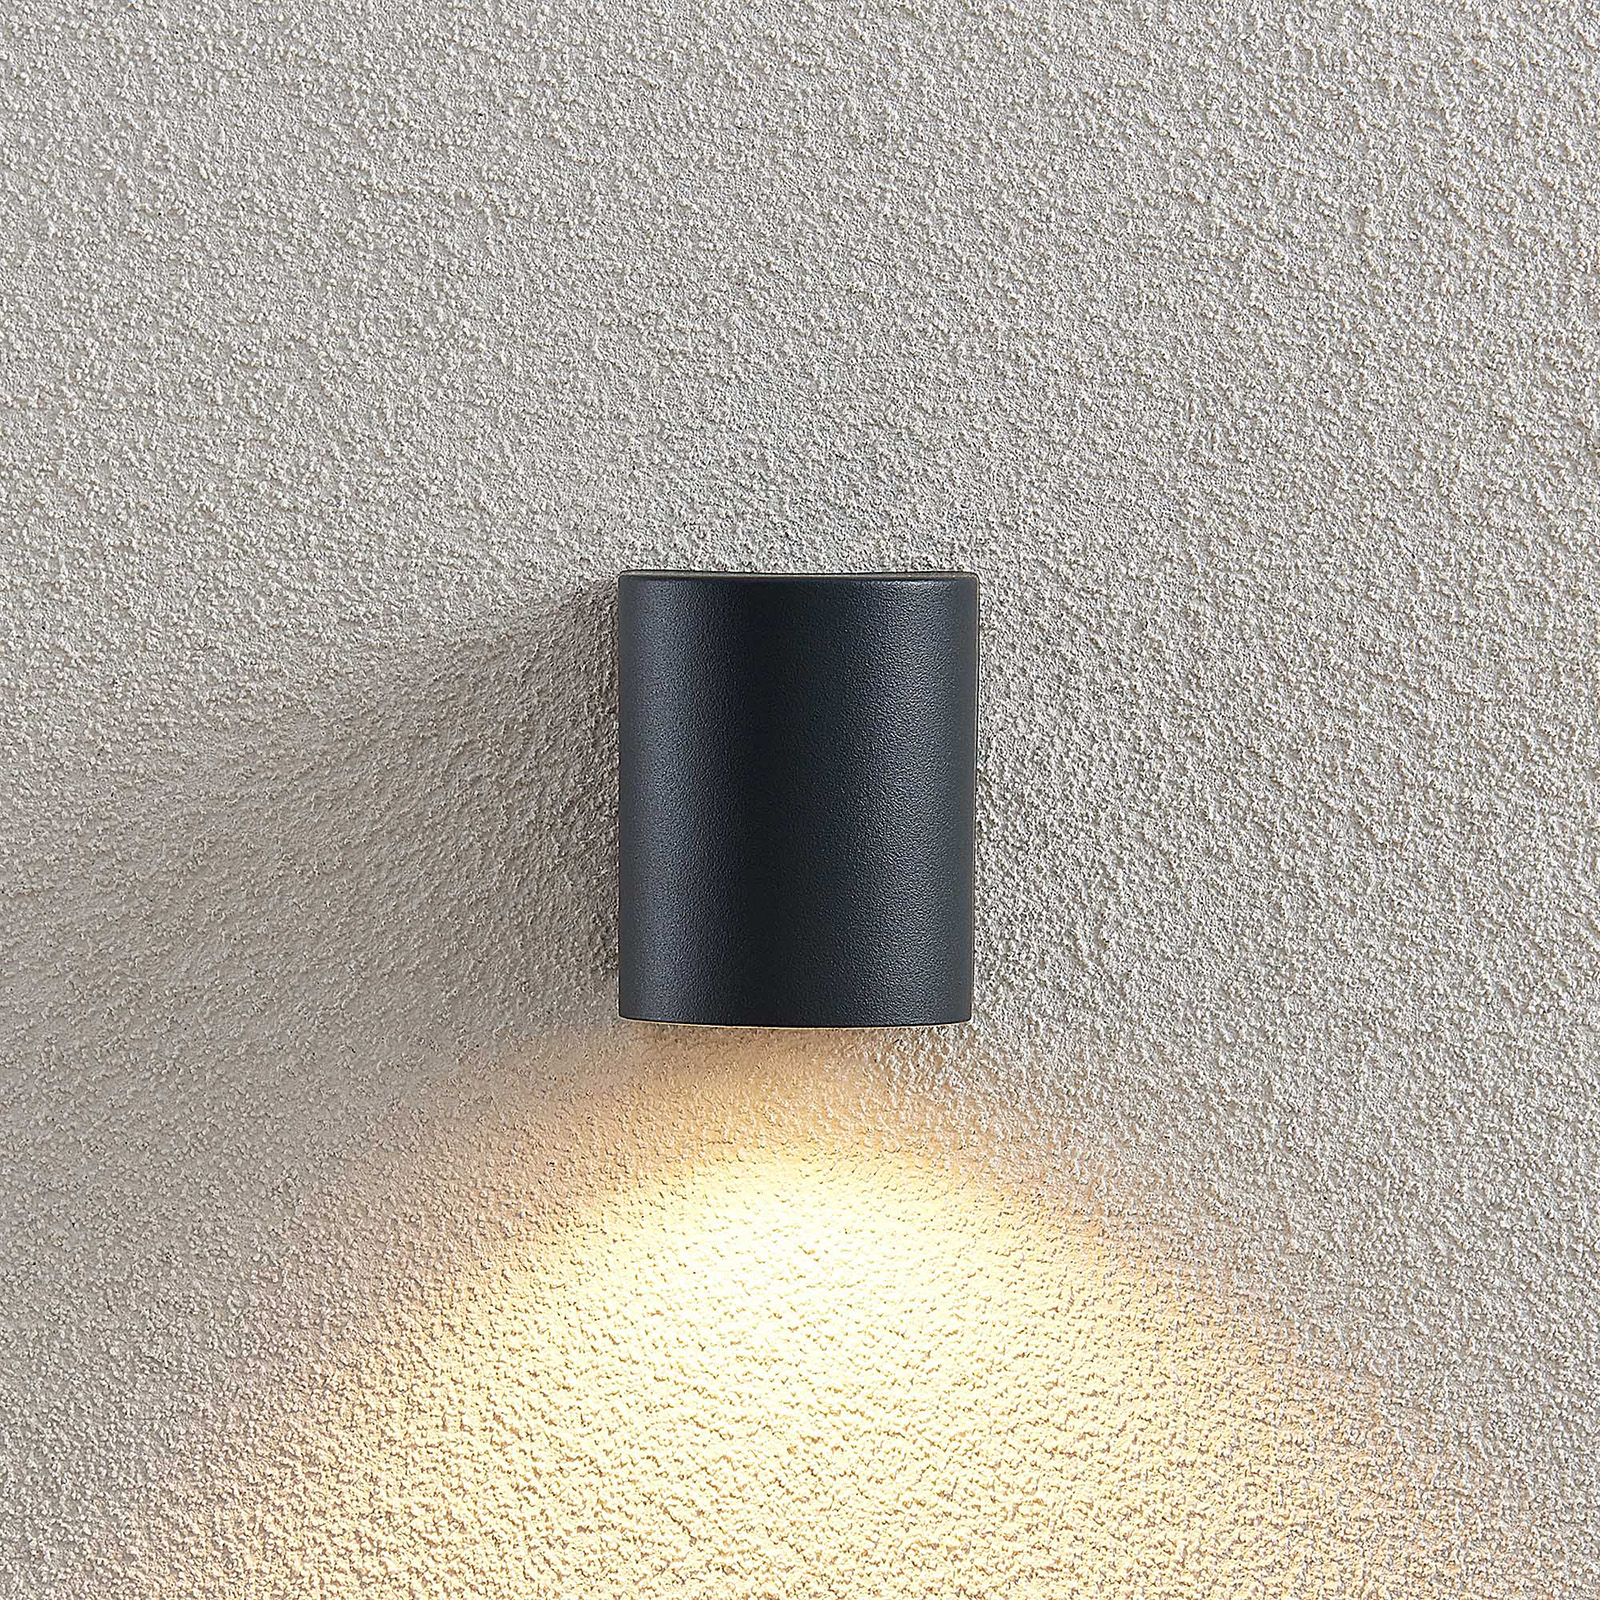 ELC Fijona Außenwandlampe, rund, 8,1 cm